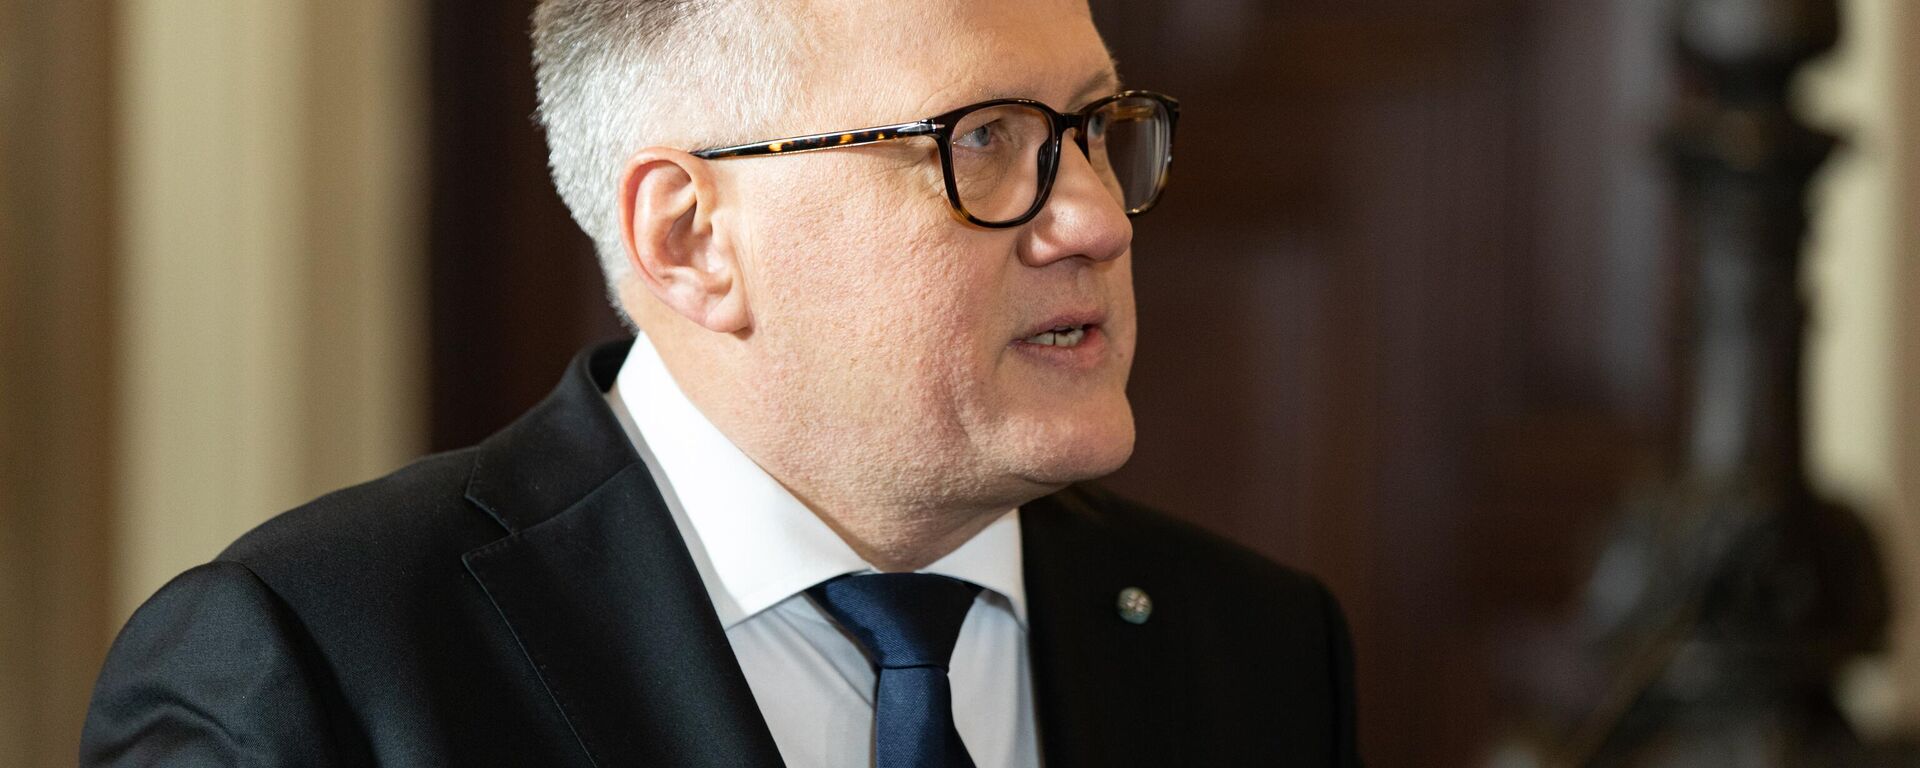 Министр финансов Латвии Арвилс Ашераденс представил в Сейм проект бюджета на 2023 год - Sputnik Латвия, 1920, 16.02.2023